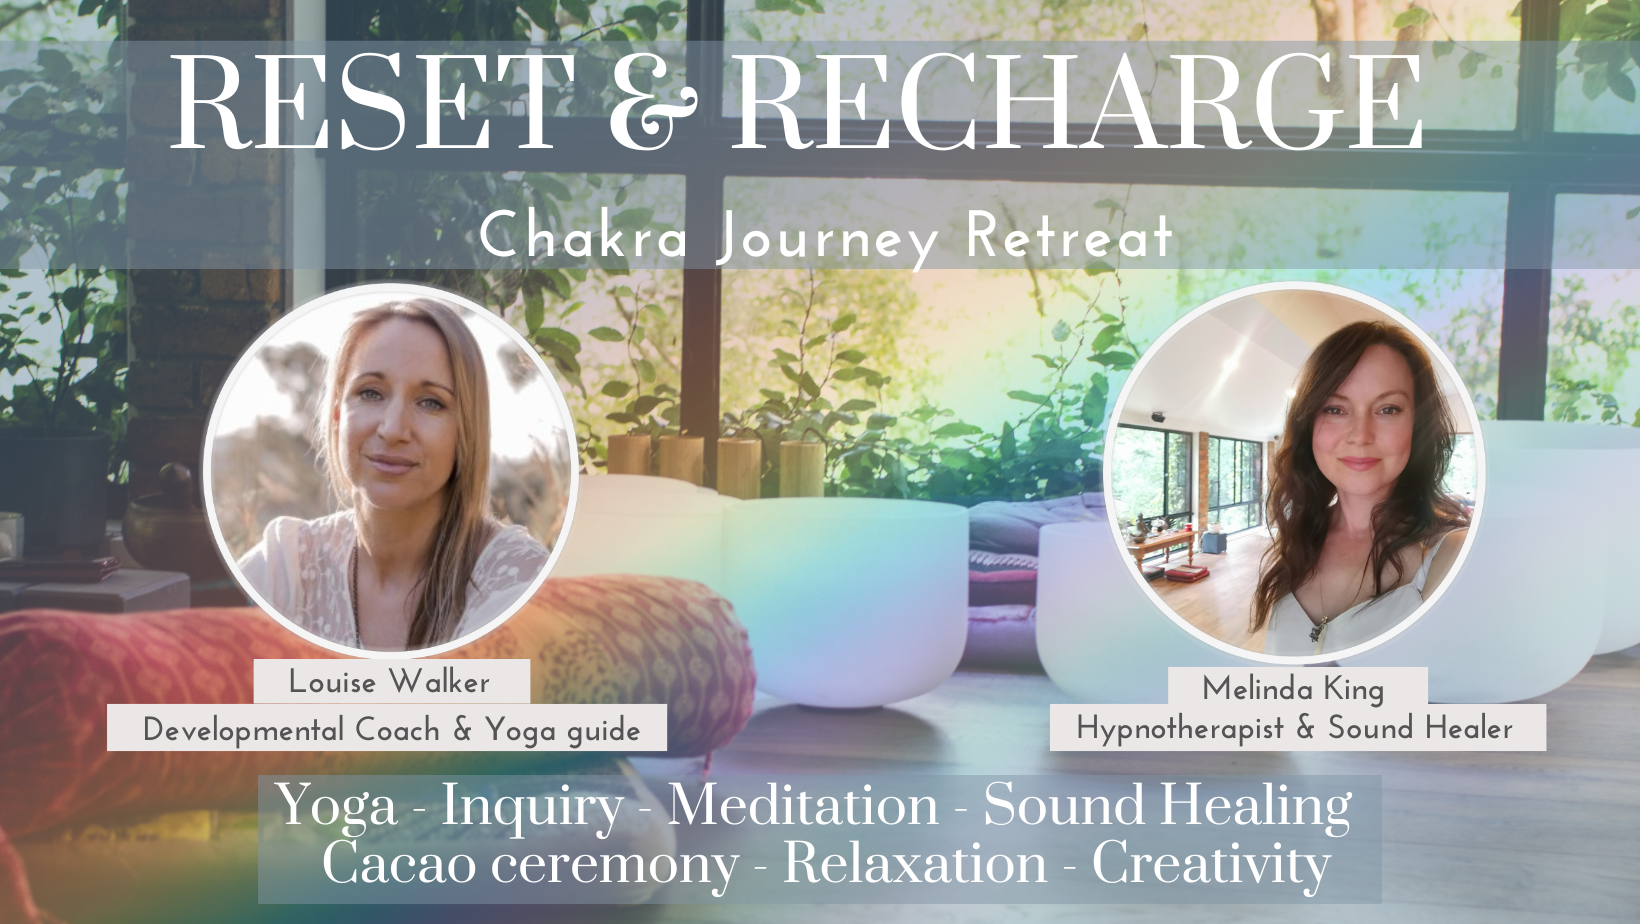 RESET & RECHARGE - Chakra Journey Retreat at La Tierra Curativa - Nov/ Dec date TBC